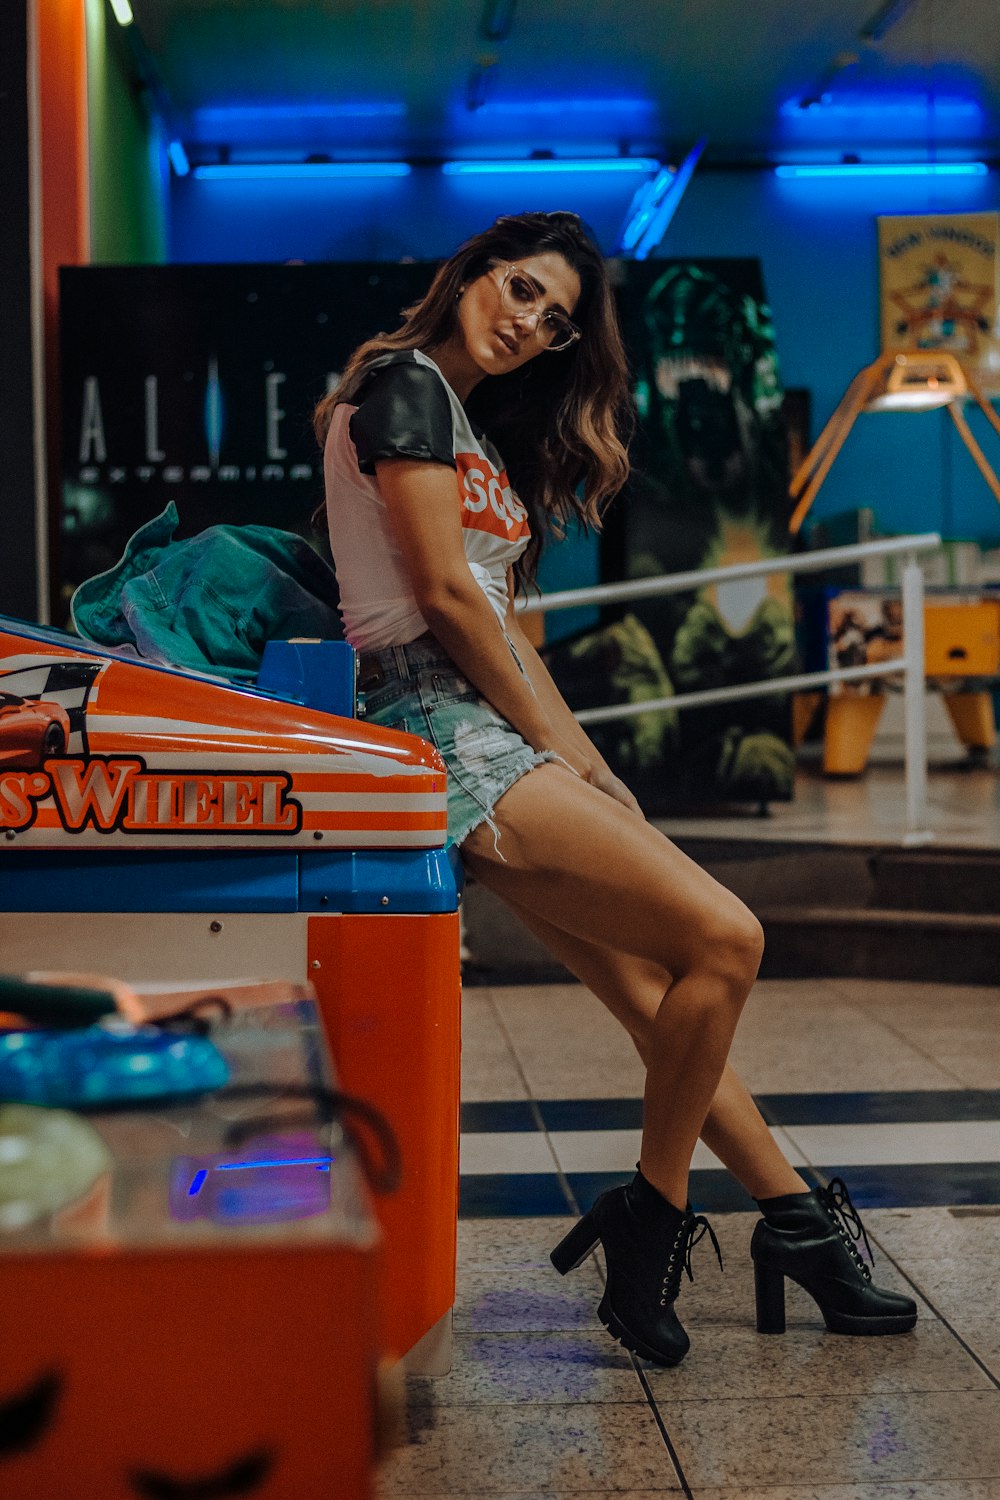 mulher sentada na máquina de arcade